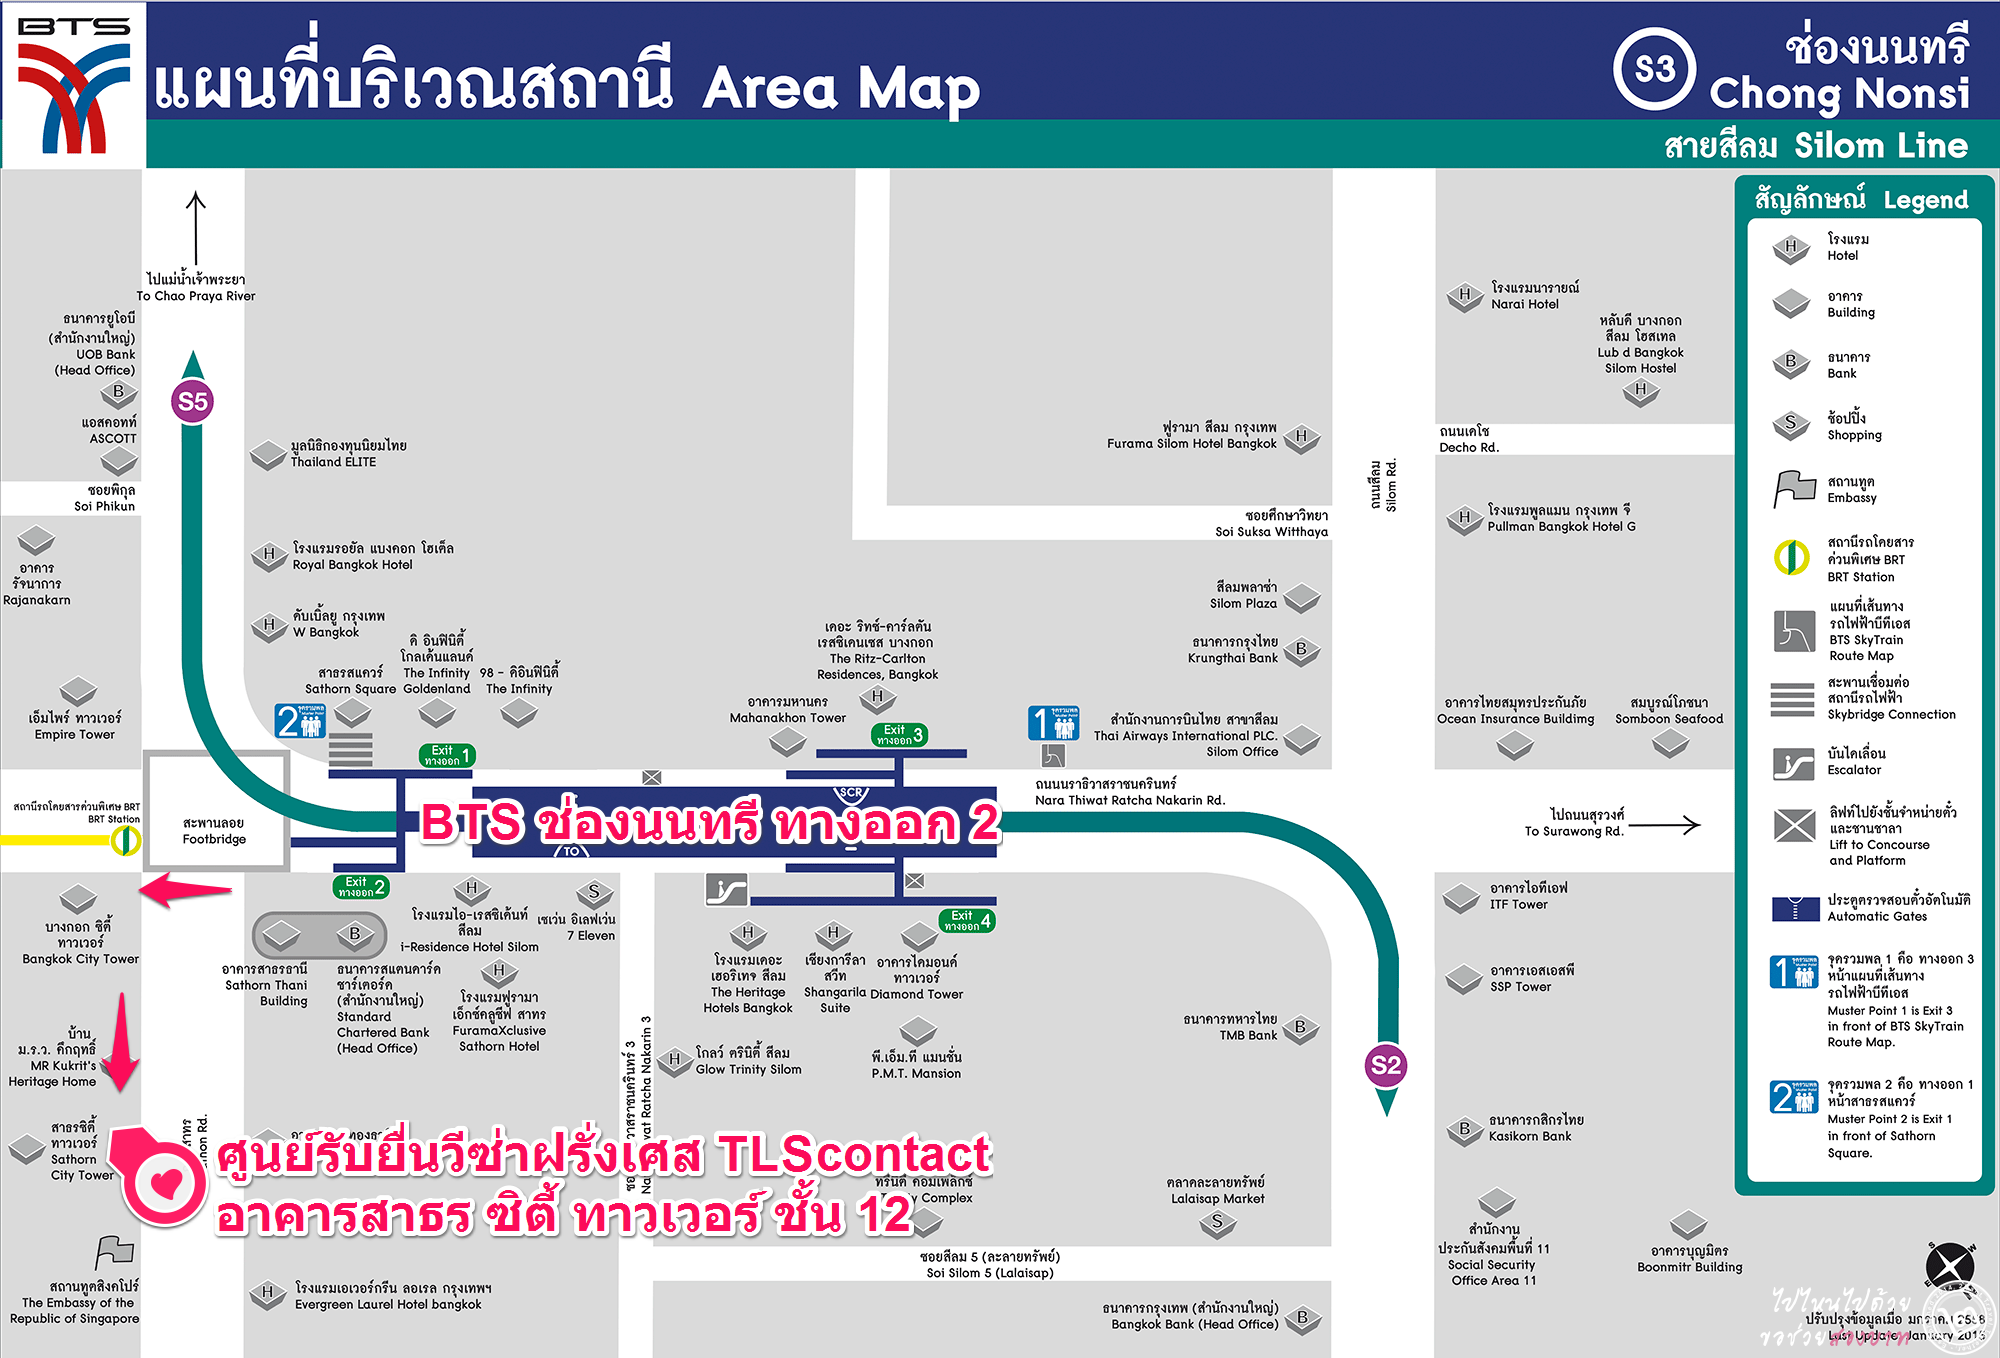 Карта бангкок банка. Район силом Бангкоке. Chong Nonsi. Chong Nonsi на карте метро Бангкока.